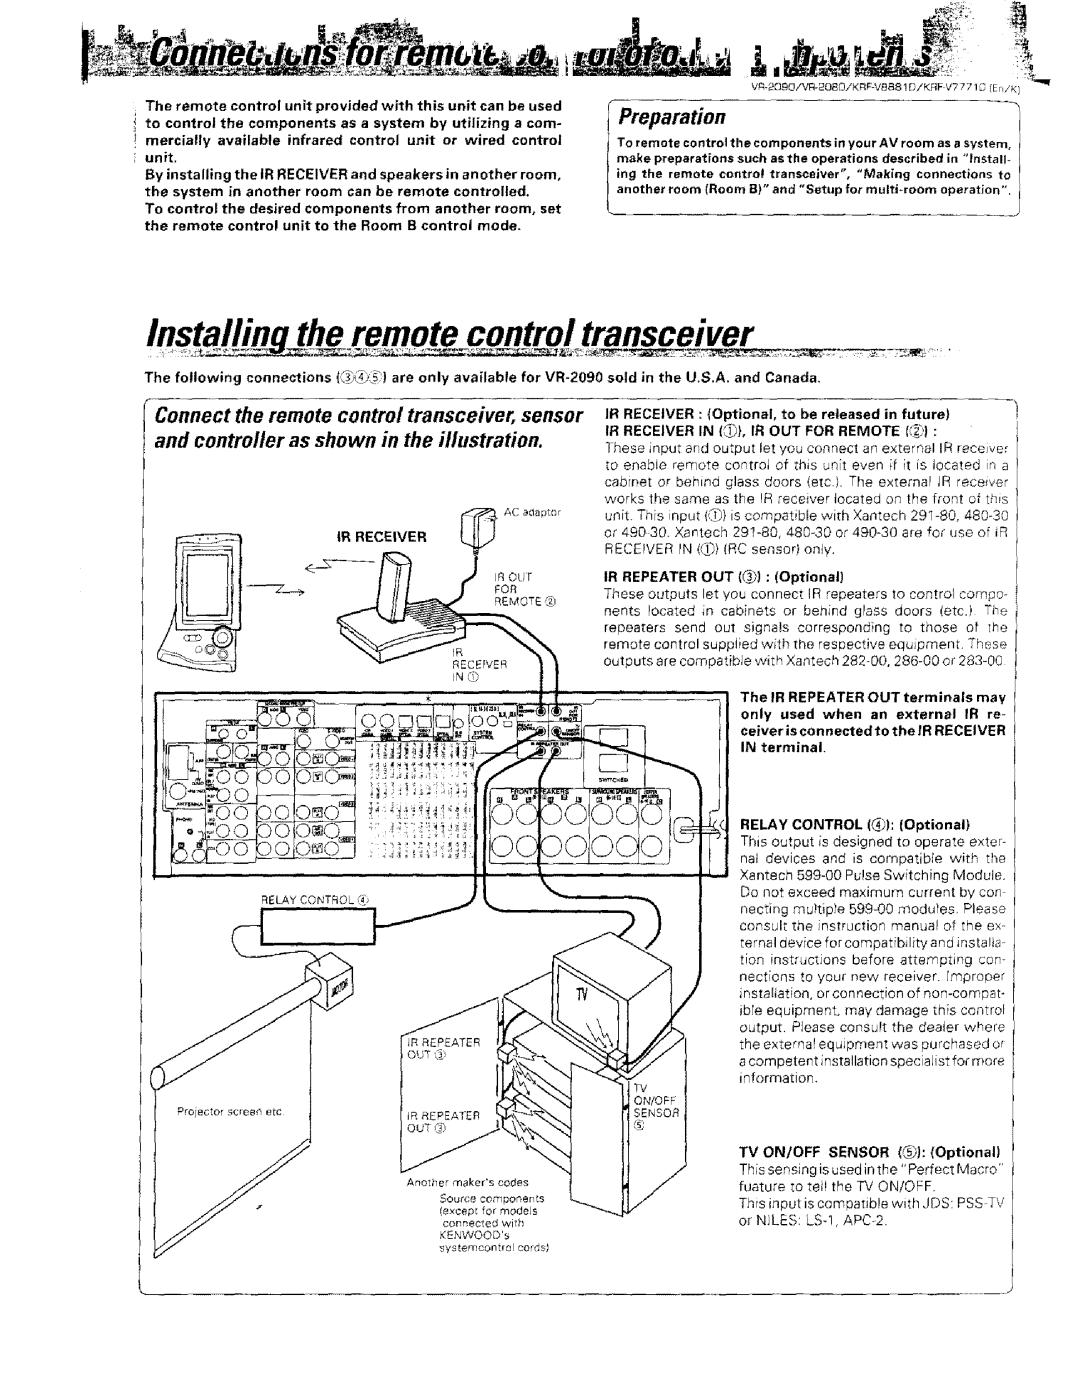 Kenwood KRF-VBB81 D, VR-2000 instruction manual the remote control transceiver, Preparation 